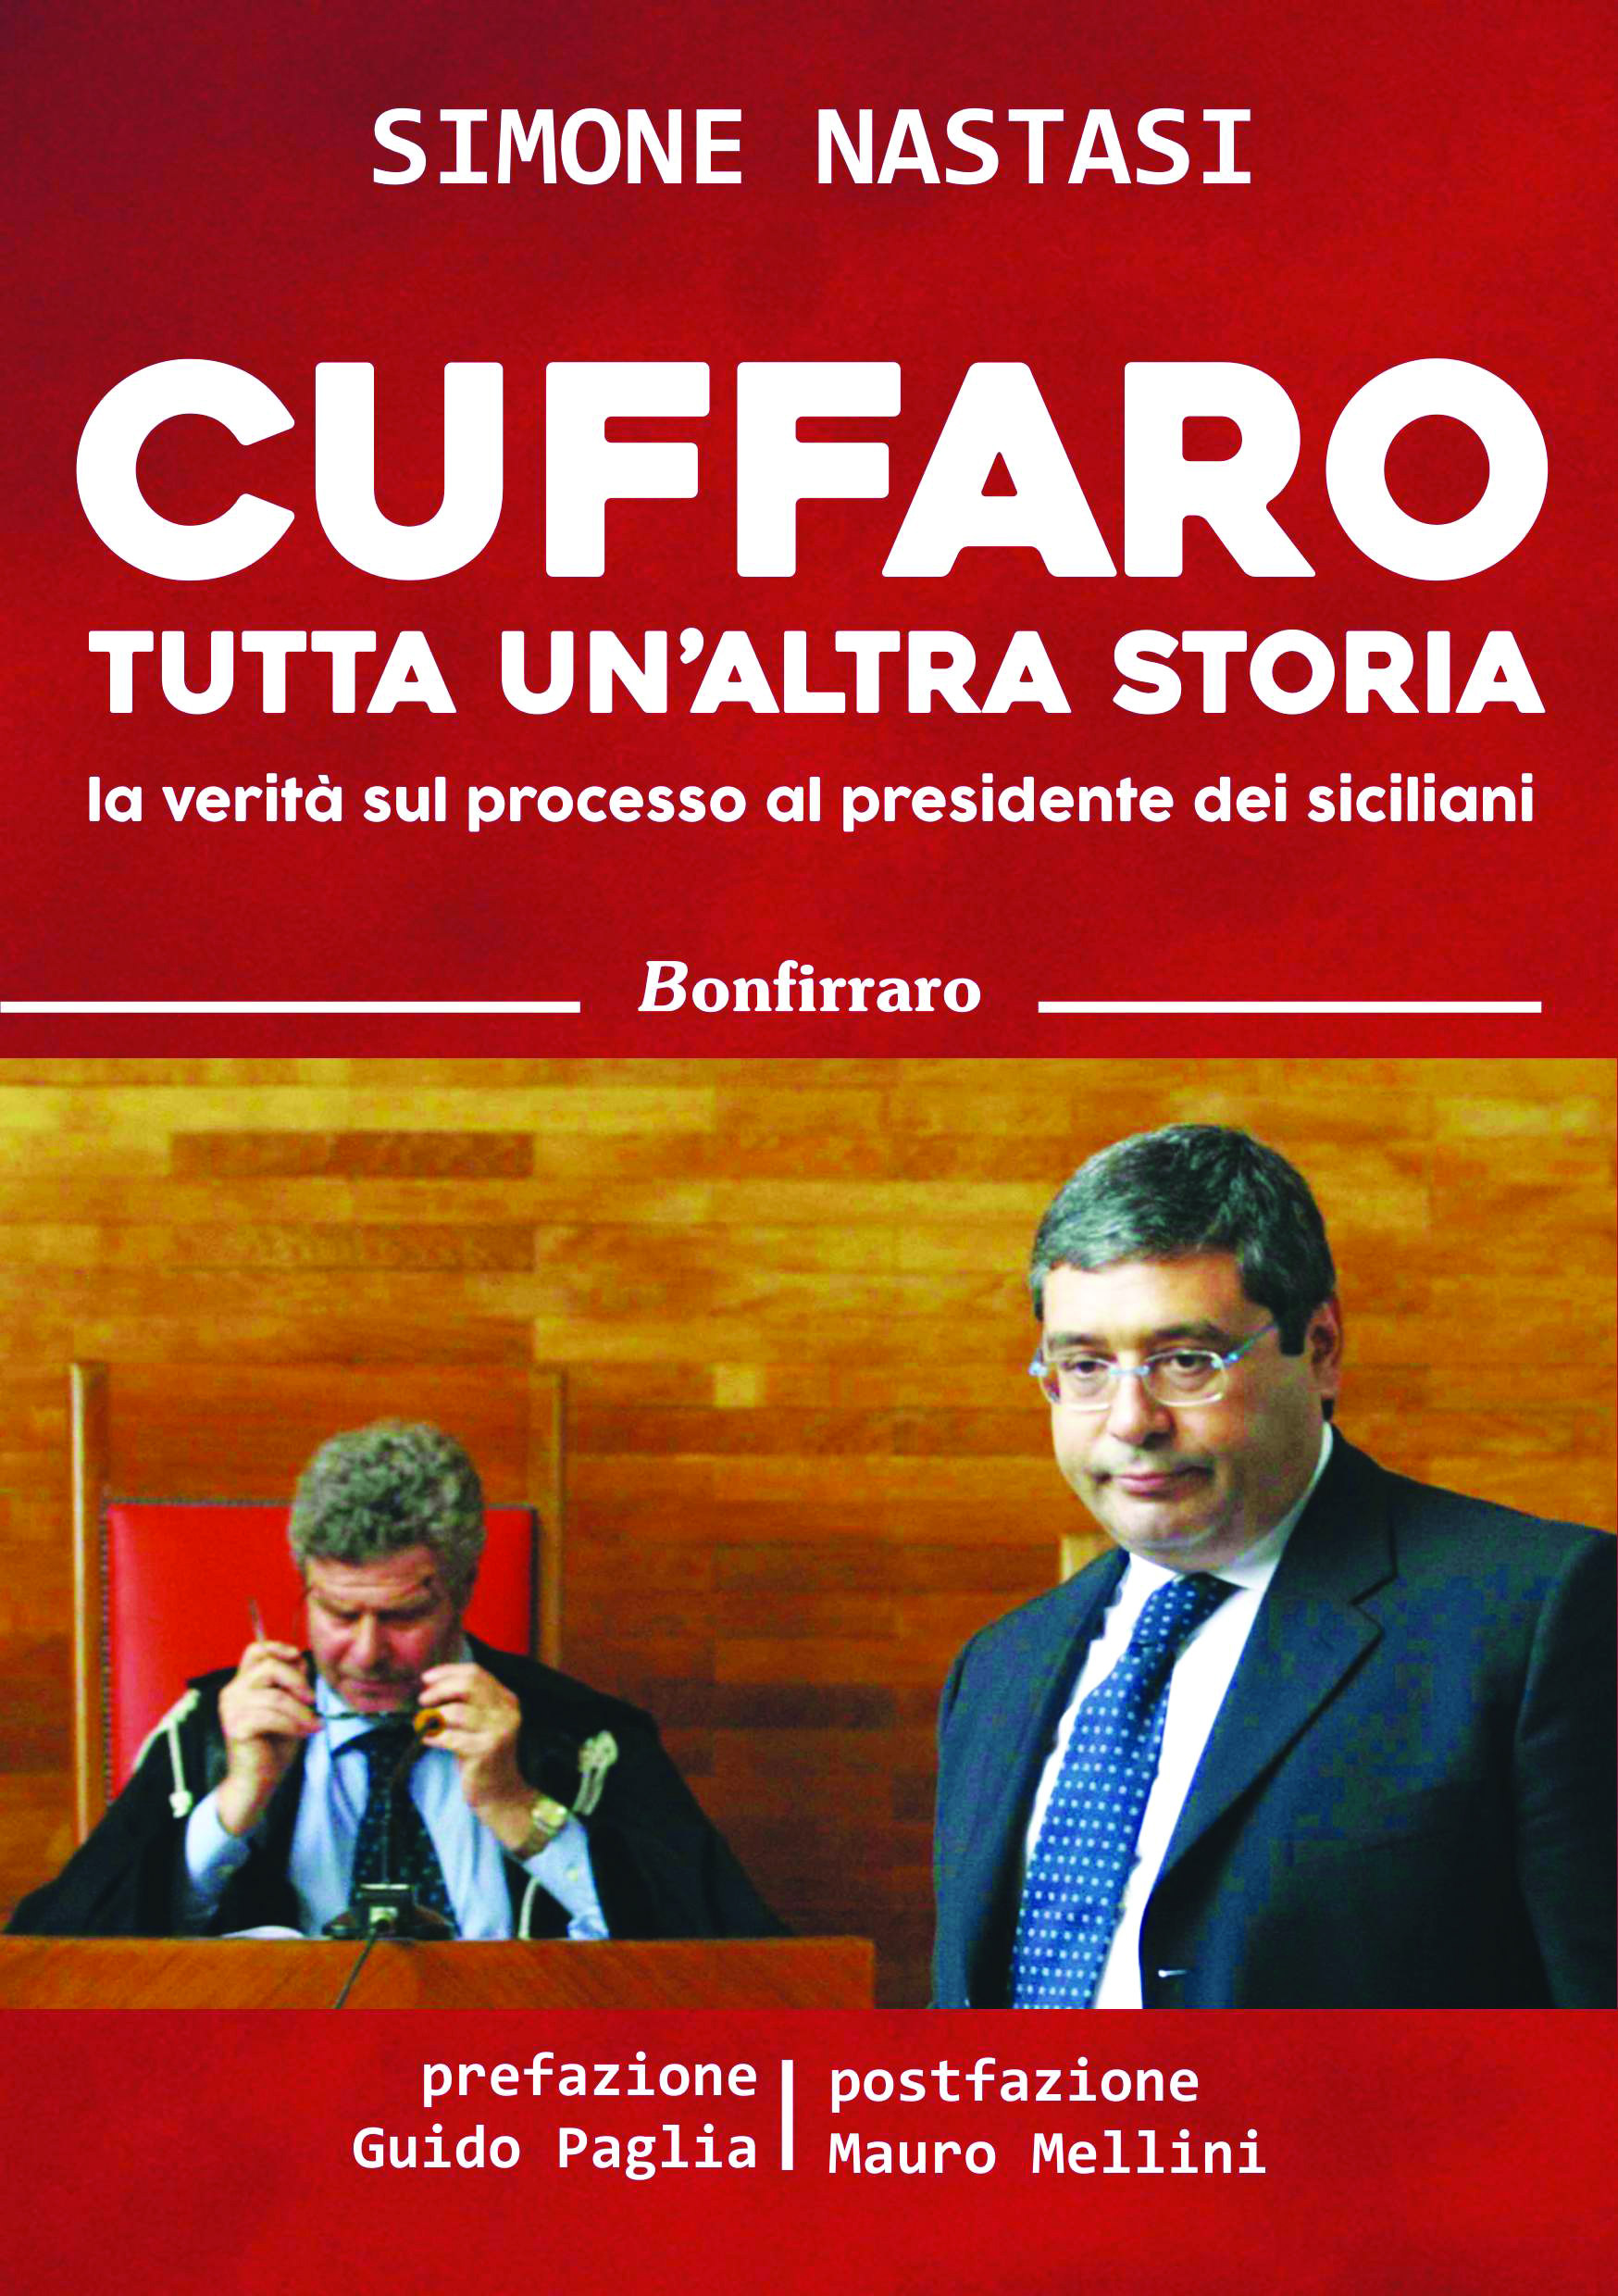 IL LIBRO: CUFFARO TUTTA UN’ALTRA STORIA – la verità sul processo al presidente dei siciliani